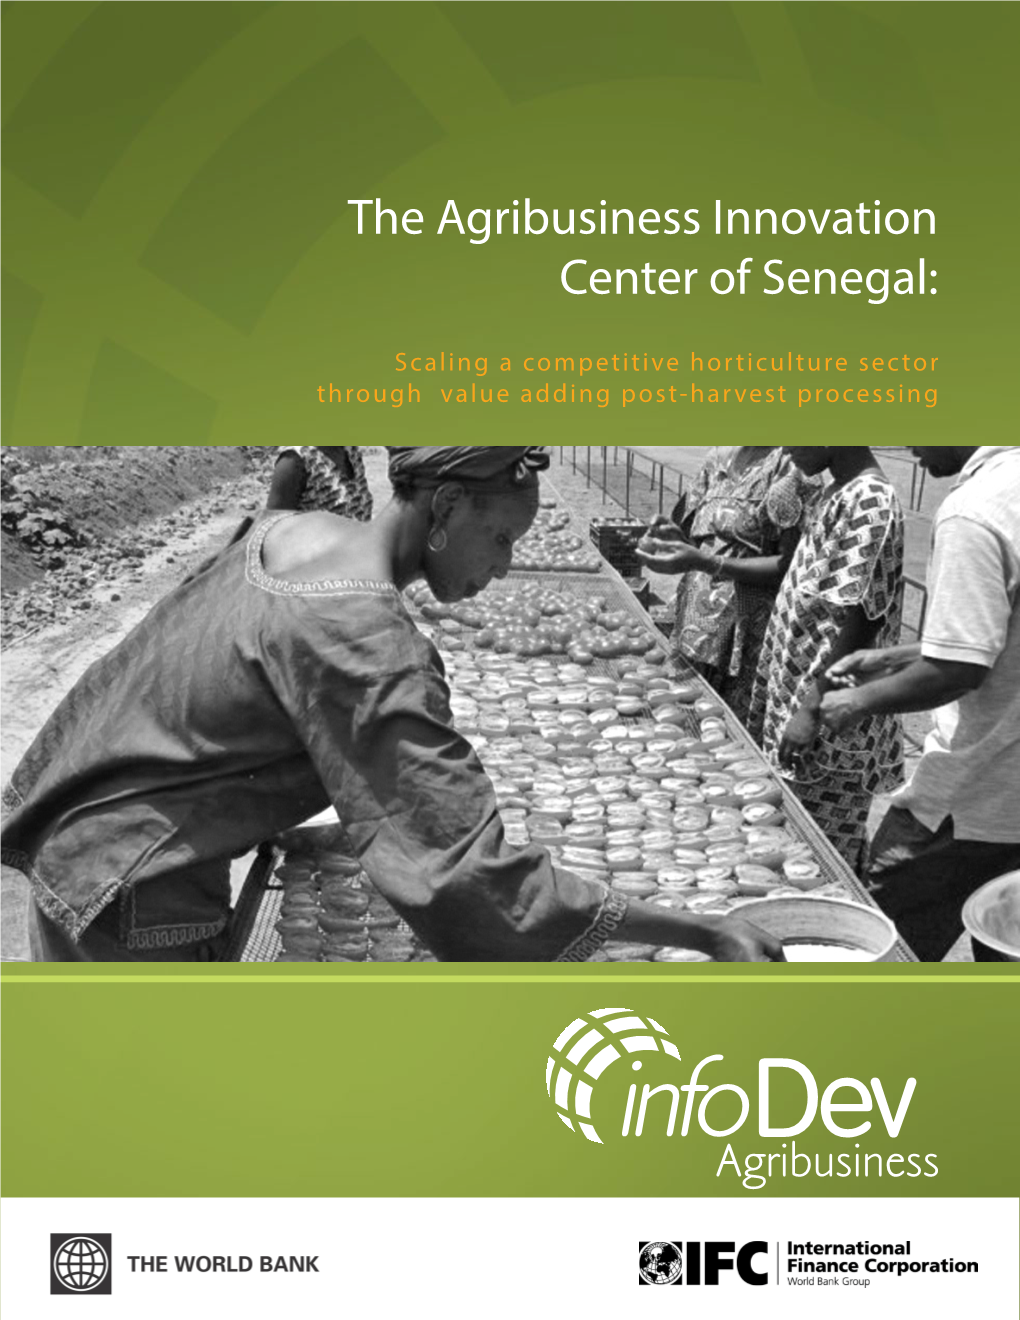 Senegal Agribusiness Innovation and Entrepreneurship Centre